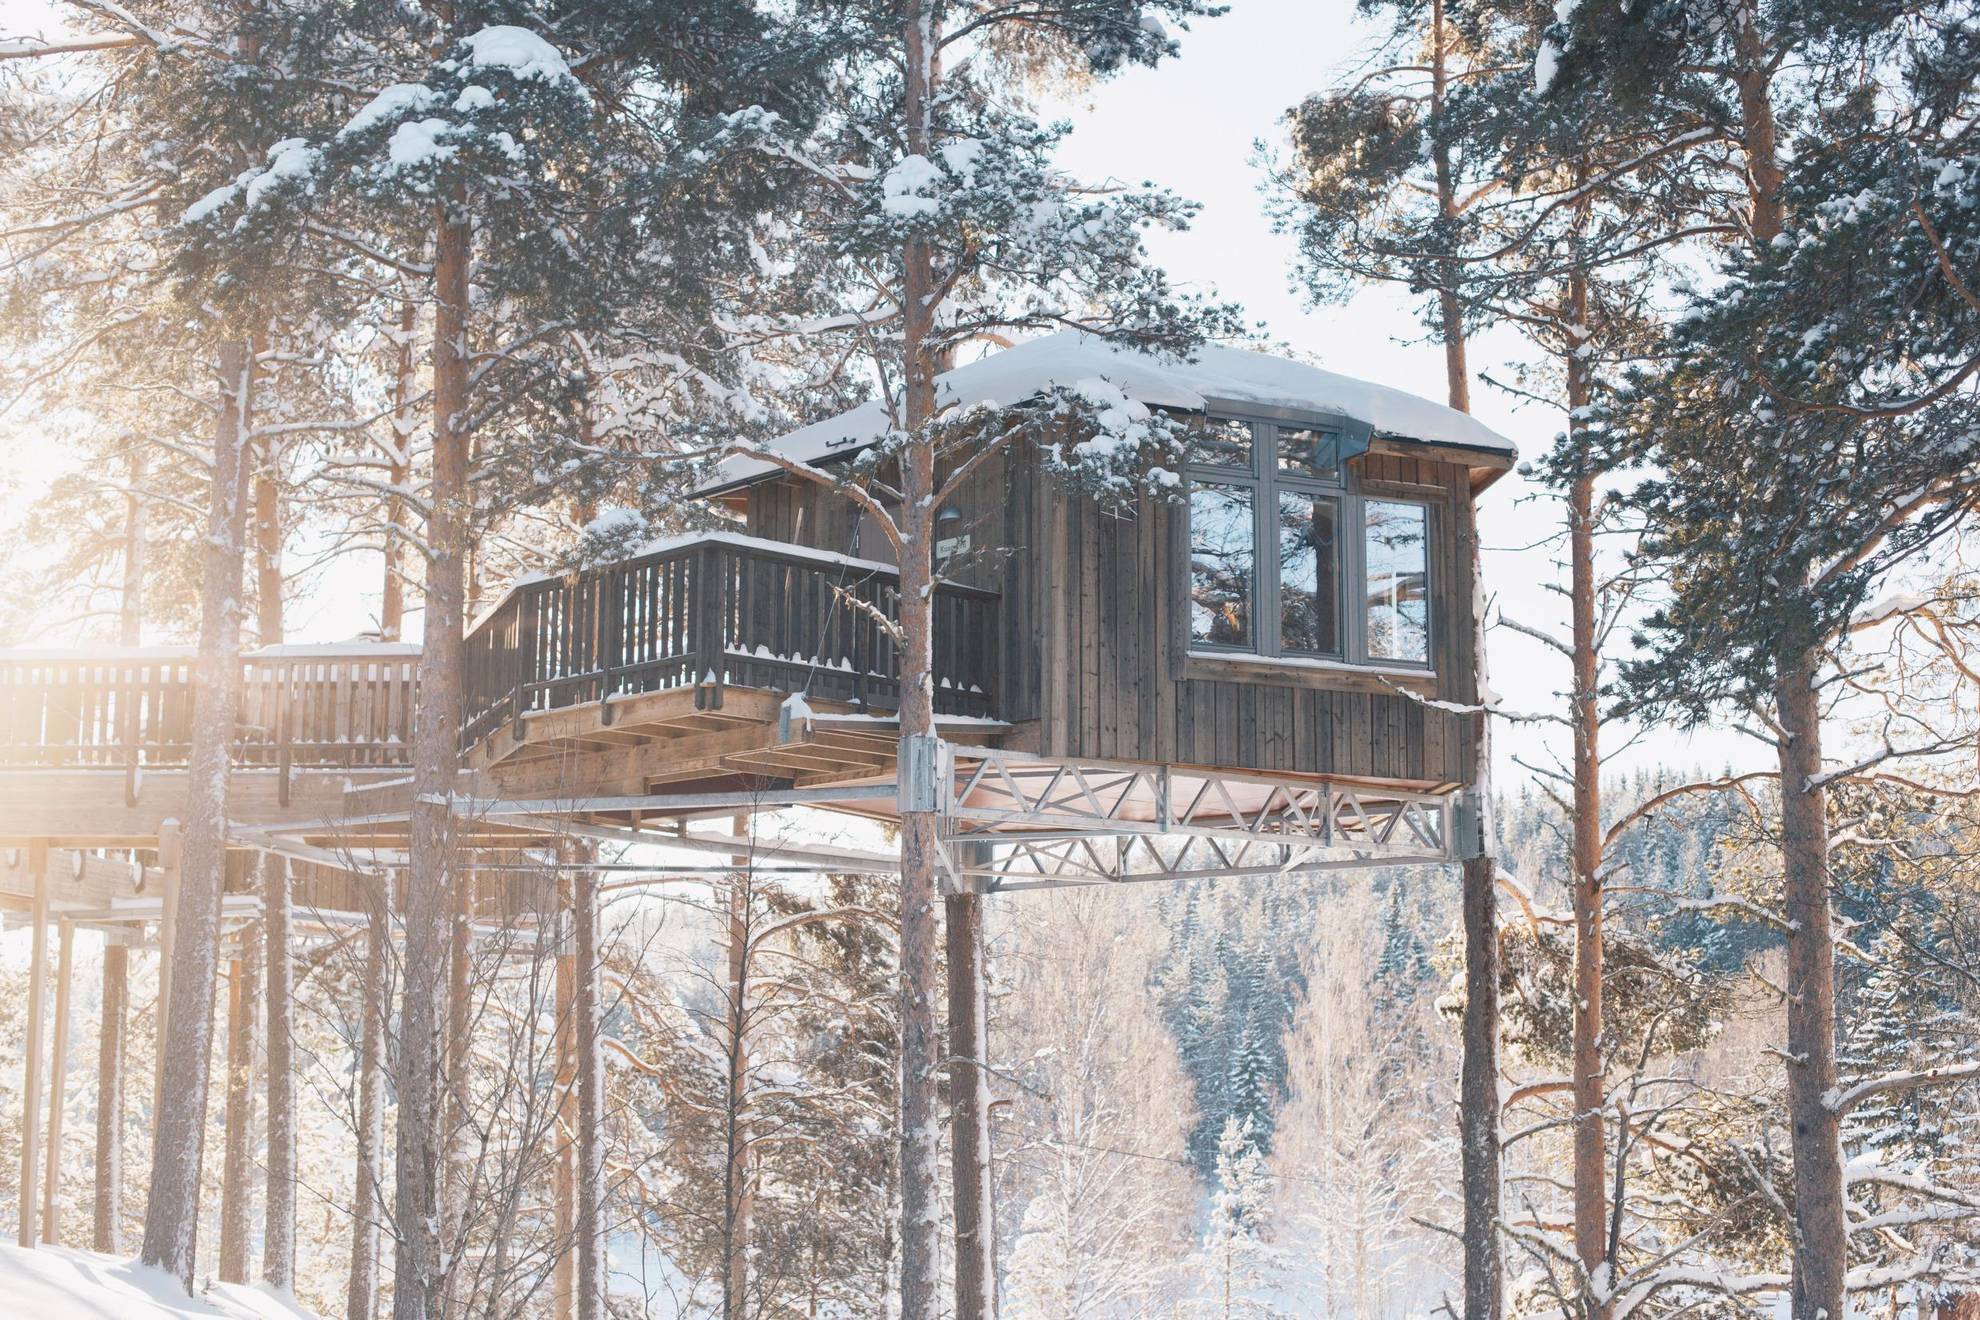 Vue en contre-plongée d'une cabane en bois dans un paysage hivernal en pleine forêt.